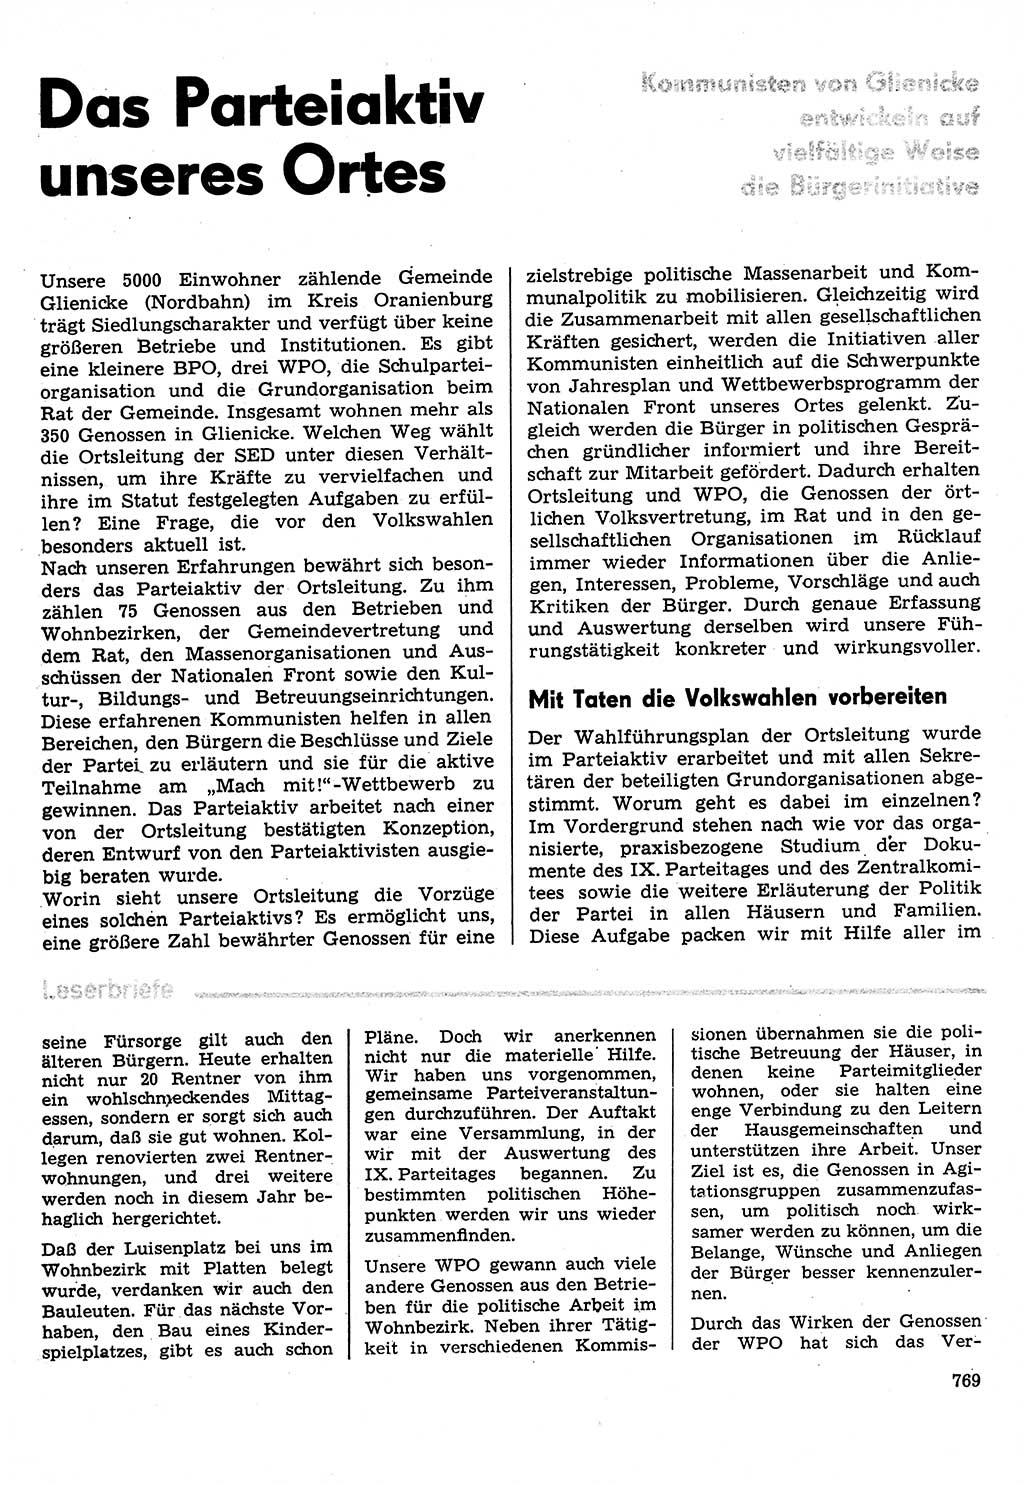 Neuer Weg (NW), Organ des Zentralkomitees (ZK) der SED (Sozialistische Einheitspartei Deutschlands) für Fragen des Parteilebens, 31. Jahrgang [Deutsche Demokratische Republik (DDR)] 1976, Seite 769 (NW ZK SED DDR 1976, S. 769)